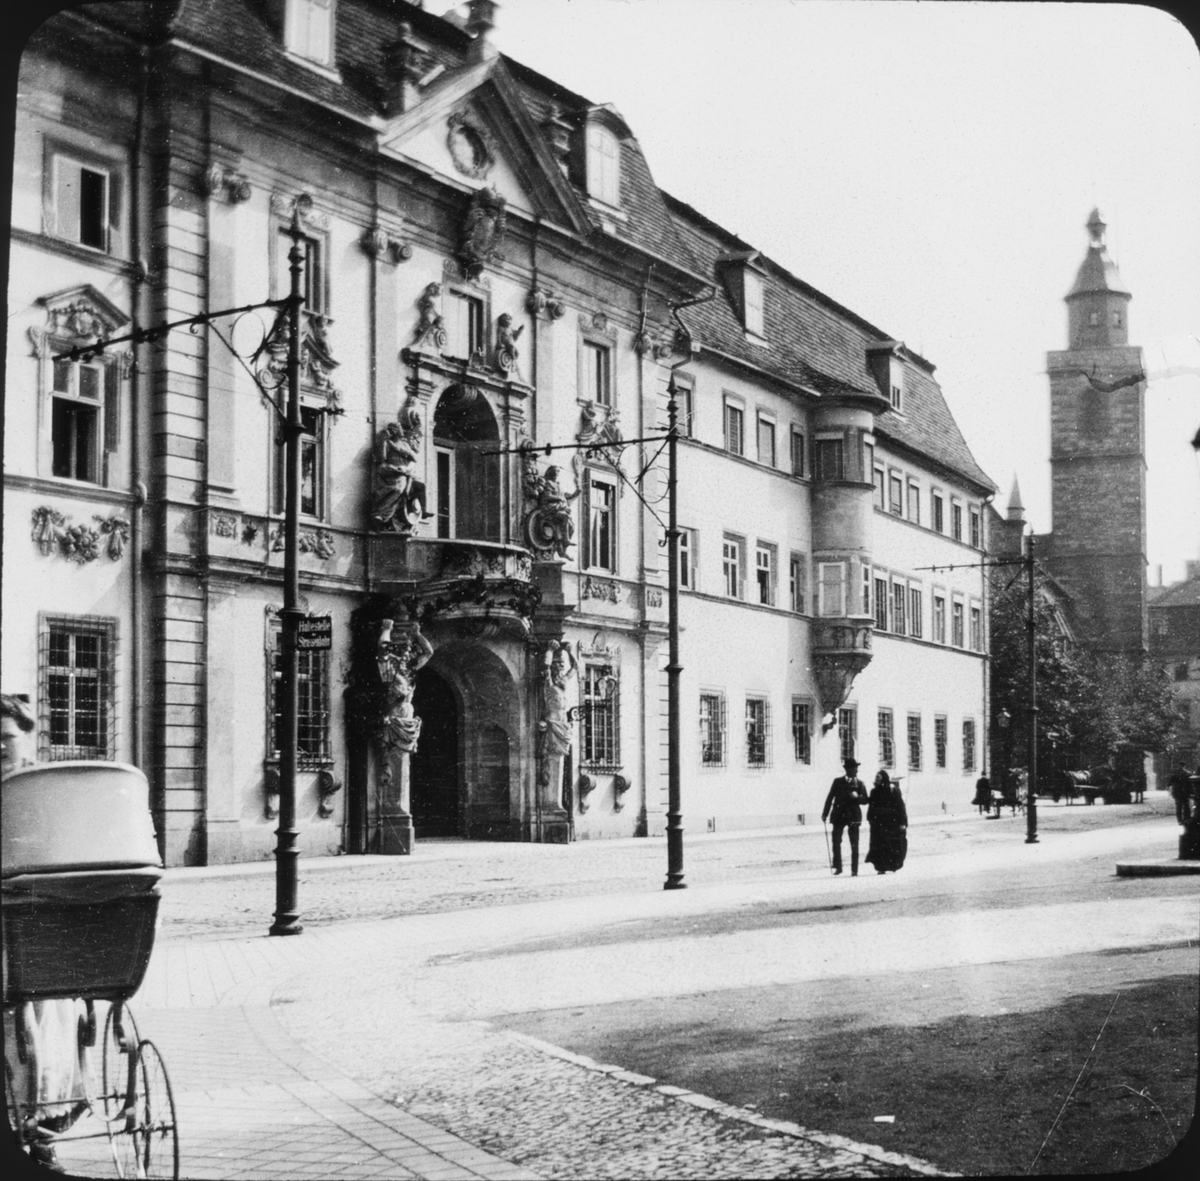 Skioptikonbild med motiv av regeringshuset i Erfurt.
Bilden har förvarats i kartong märkt: Resan 1907. Erfurt 10. 14. Text på bild: "Das Regierungshaus".